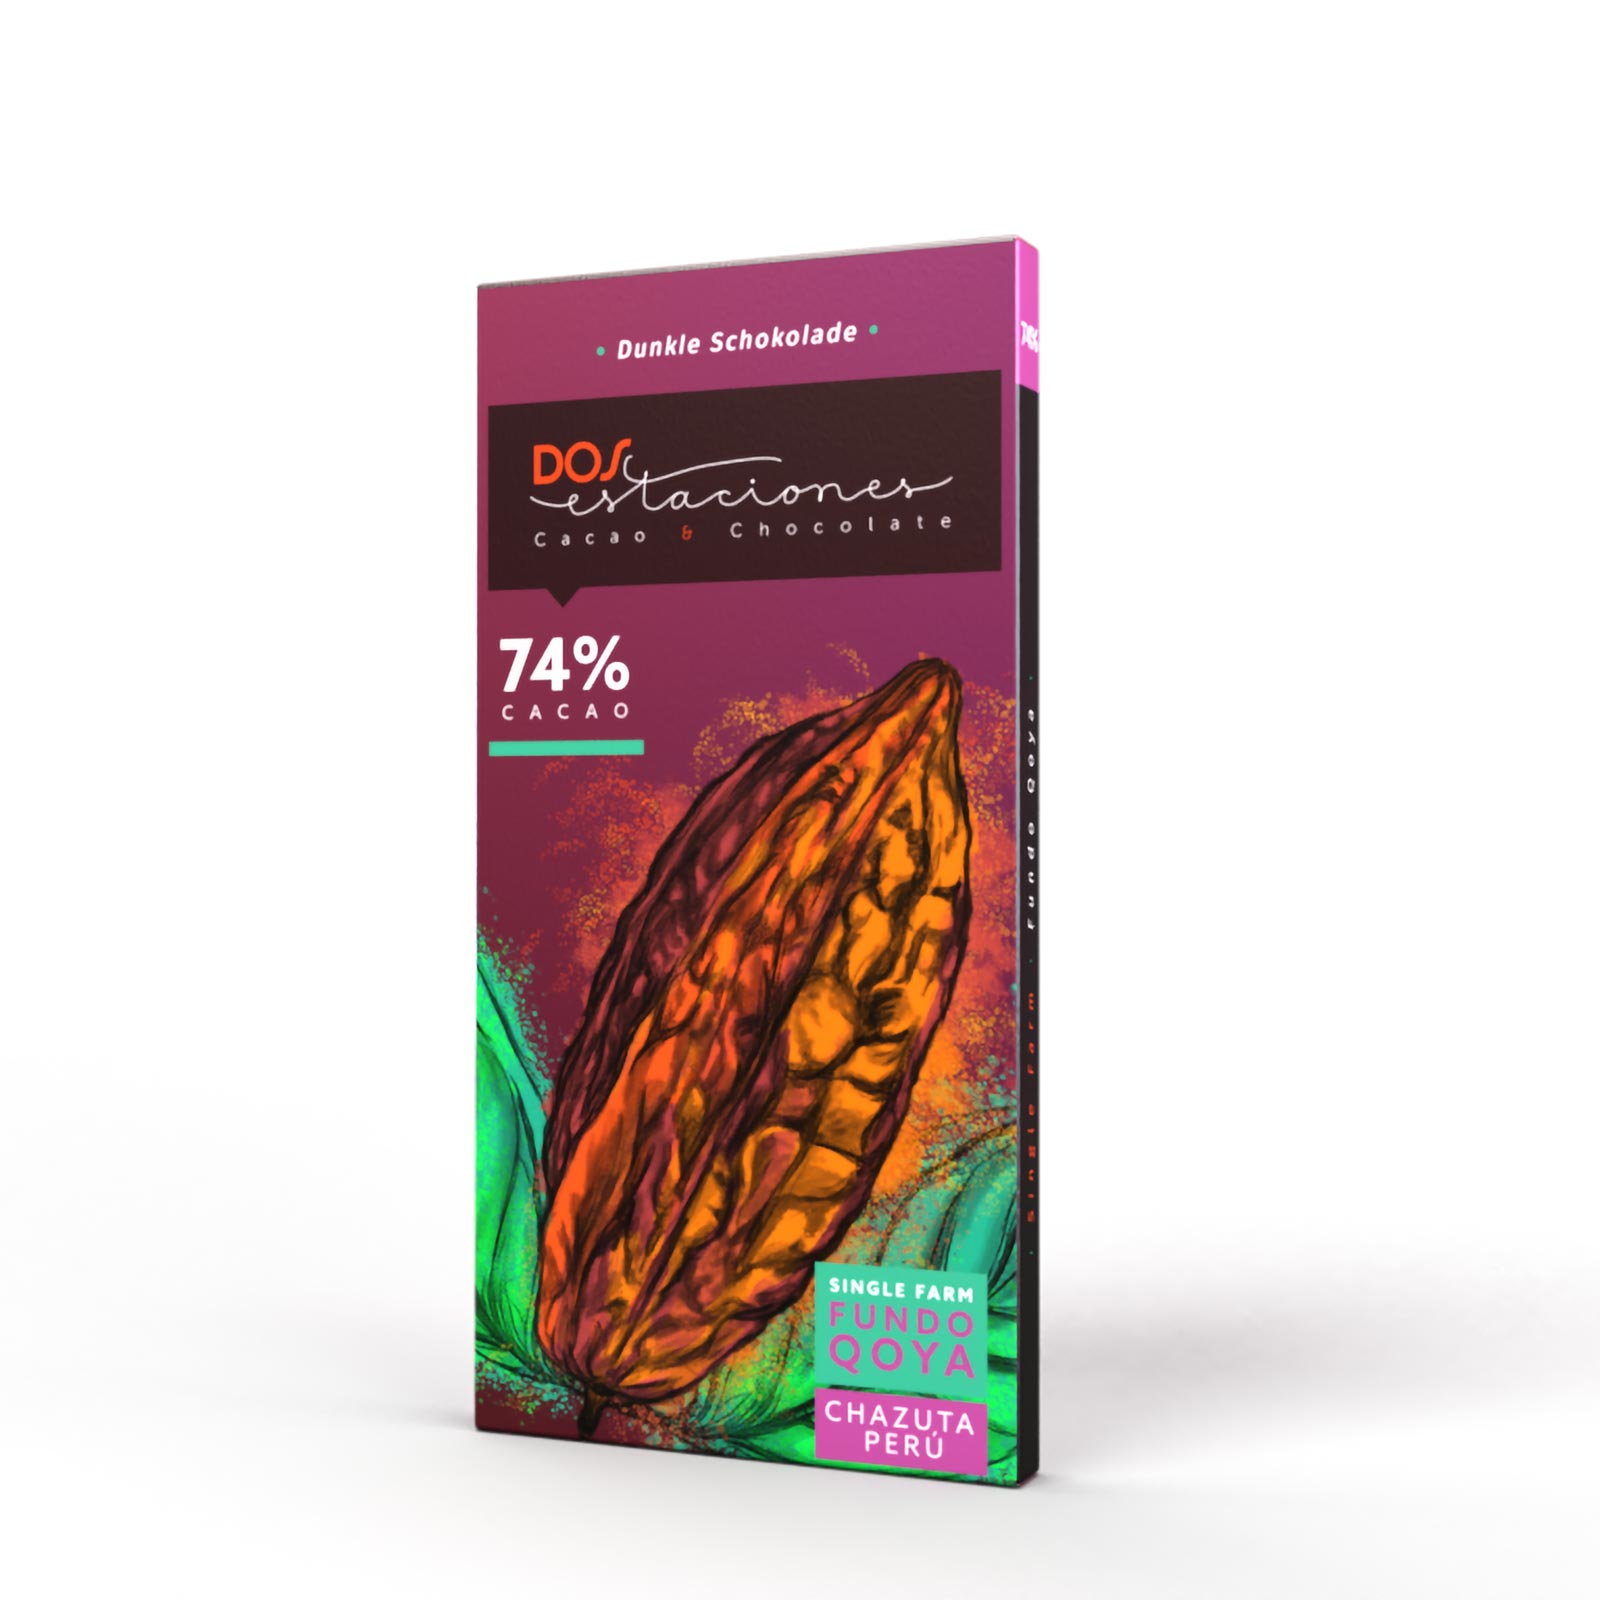 DOS ESTACIONES | Schokolade »Fundo Qoya Chazuta Peru« 74% | BIO | 54g